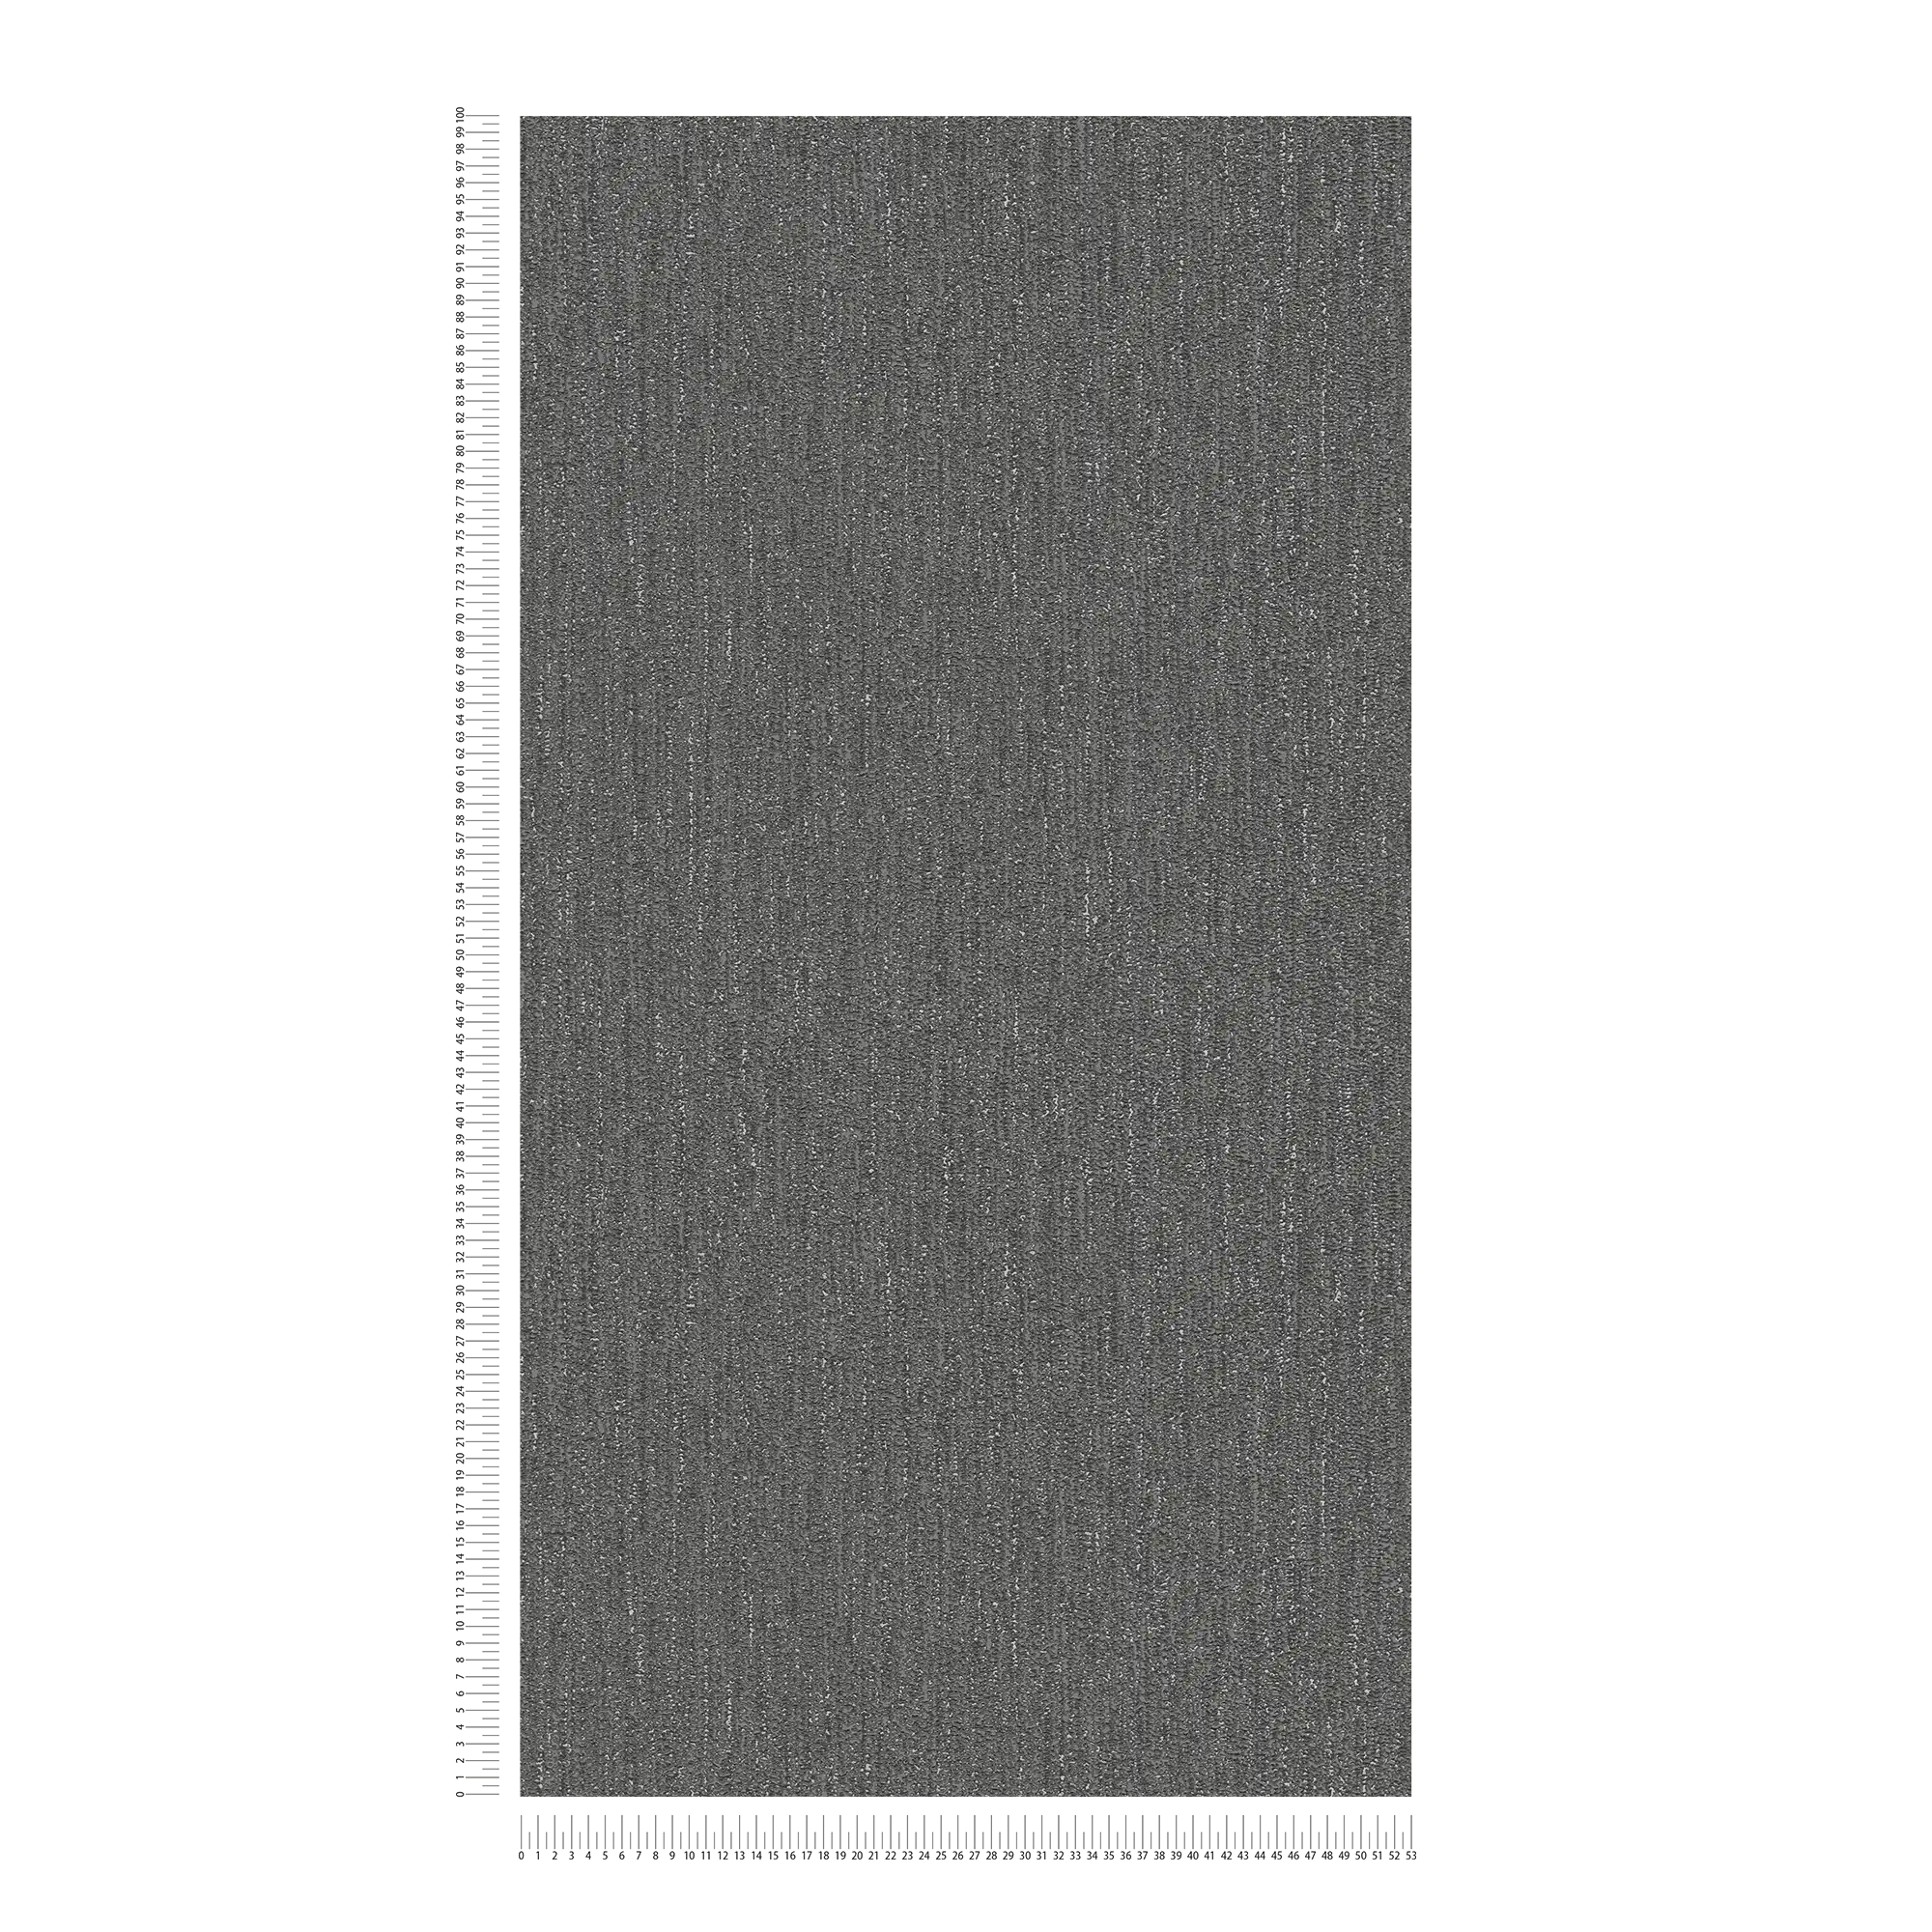             Leicht glänzende Tapete mit Gewebe Struktur – Schwarz, Grau, Silber
        